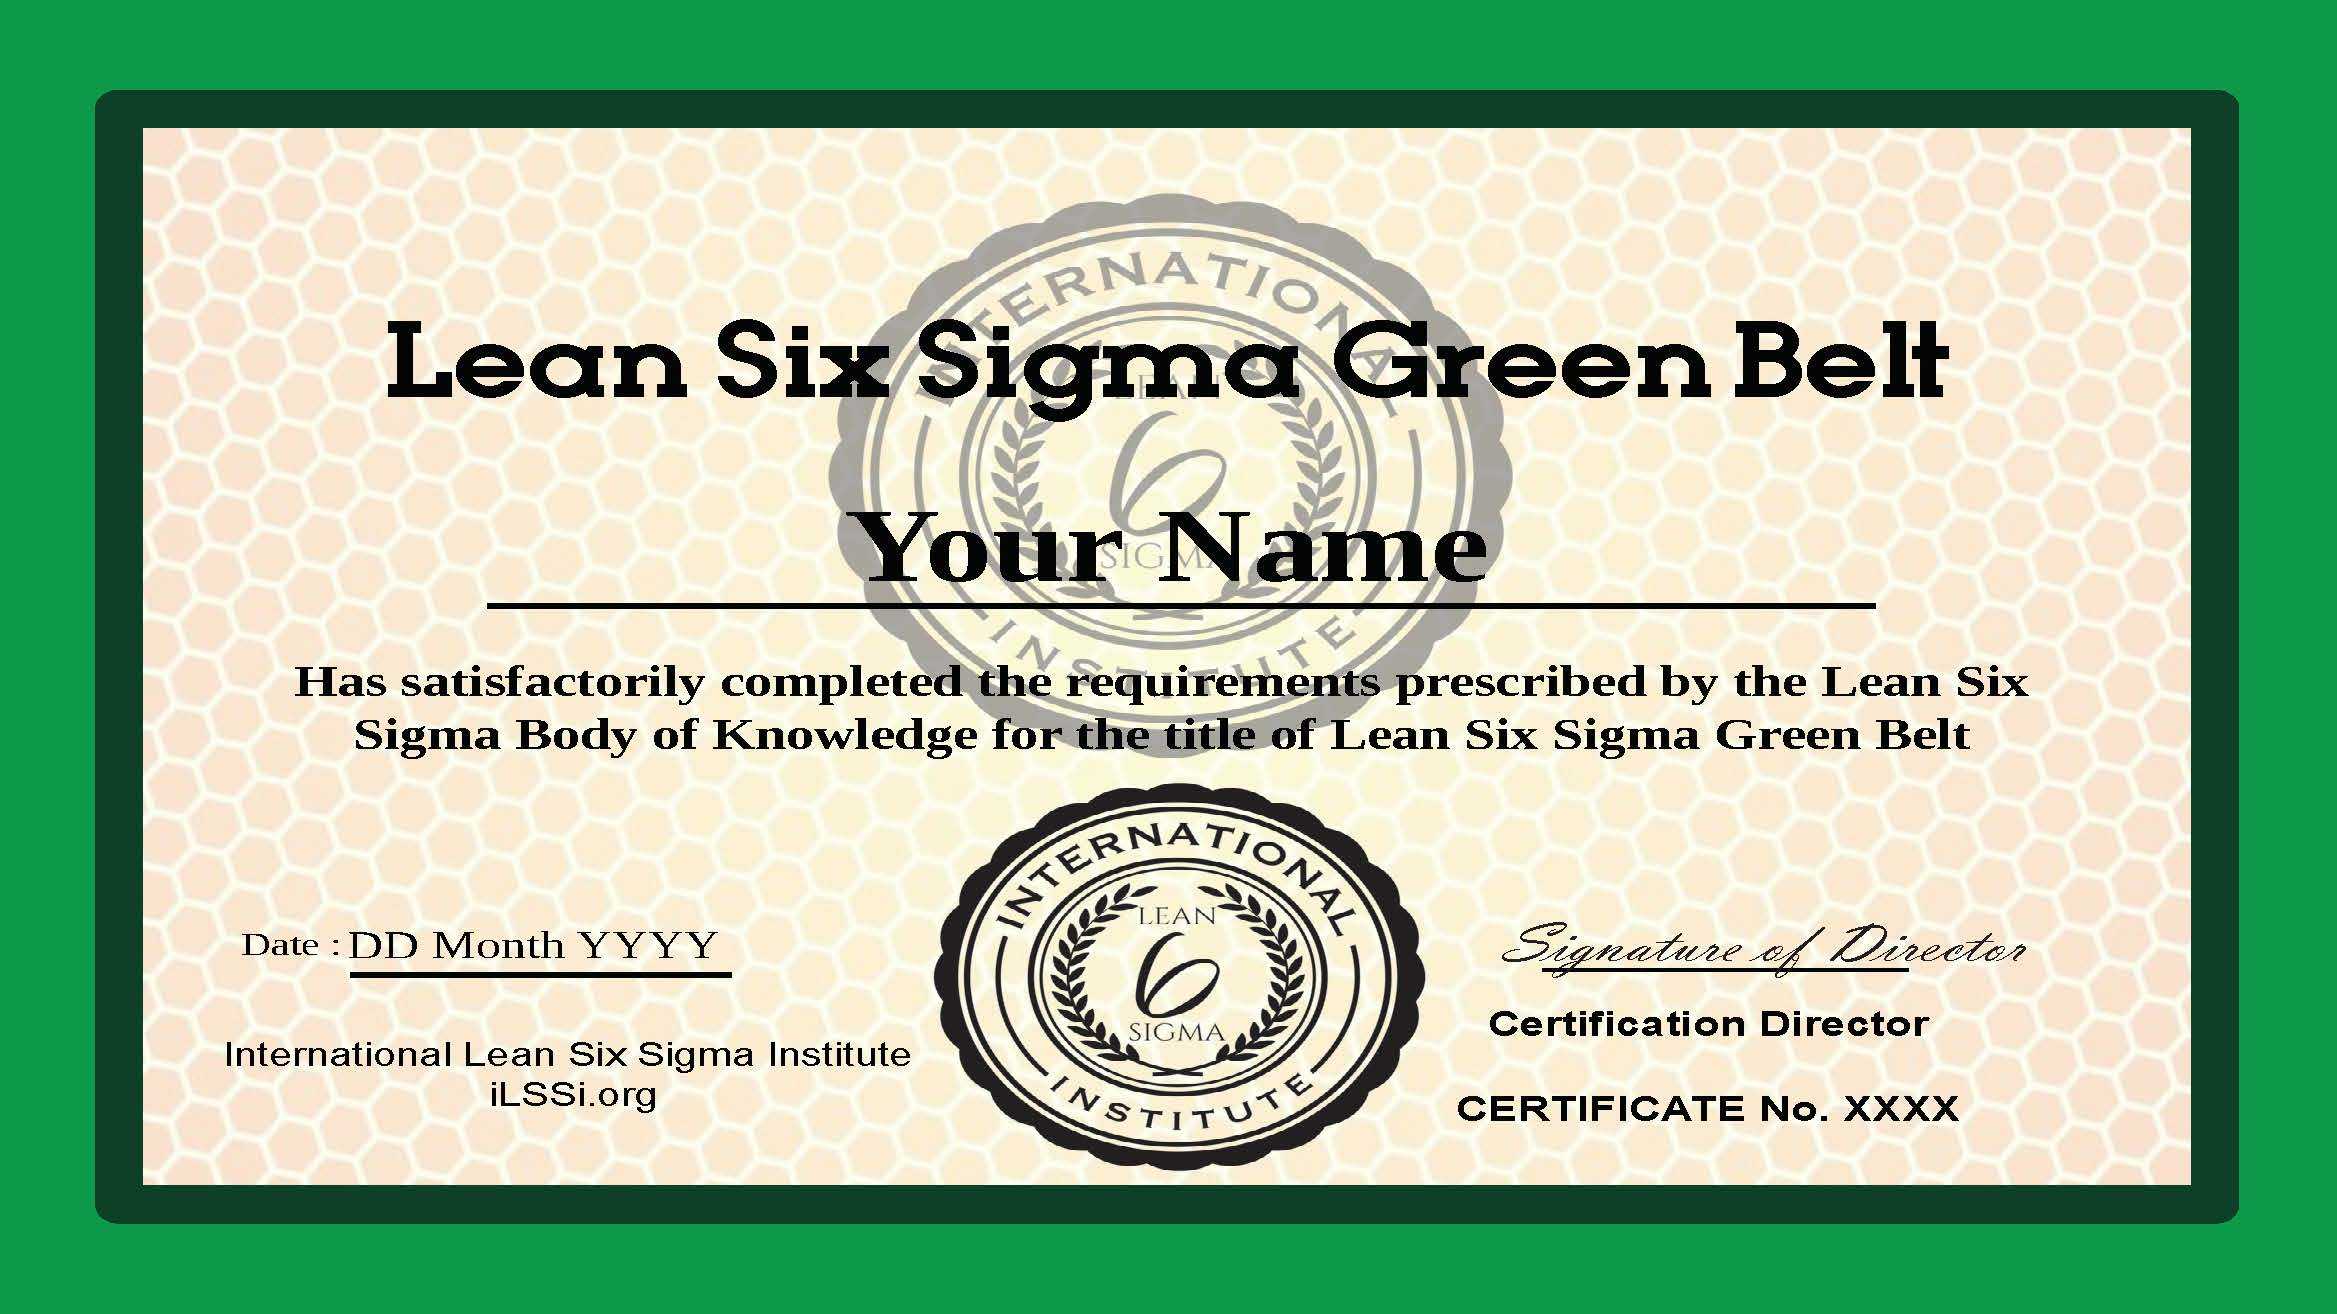 Ilssi Green Belt Oct 2019 Template Regarding Green Belt Certificate Template